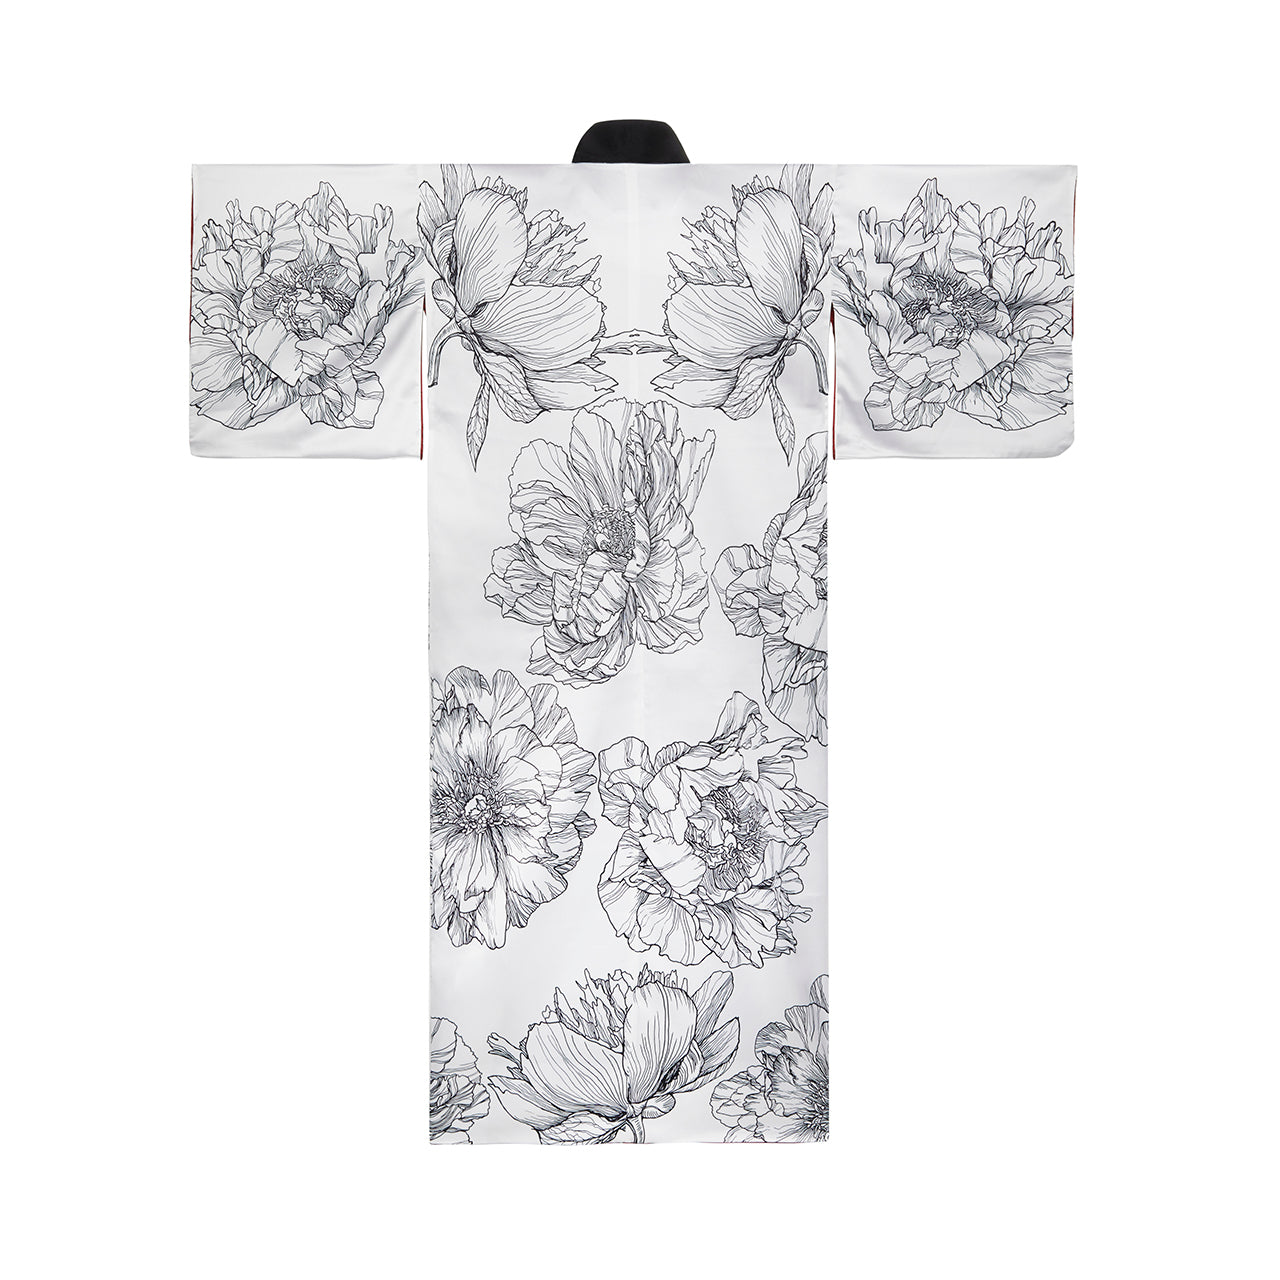 Botan Kimono / Peonies